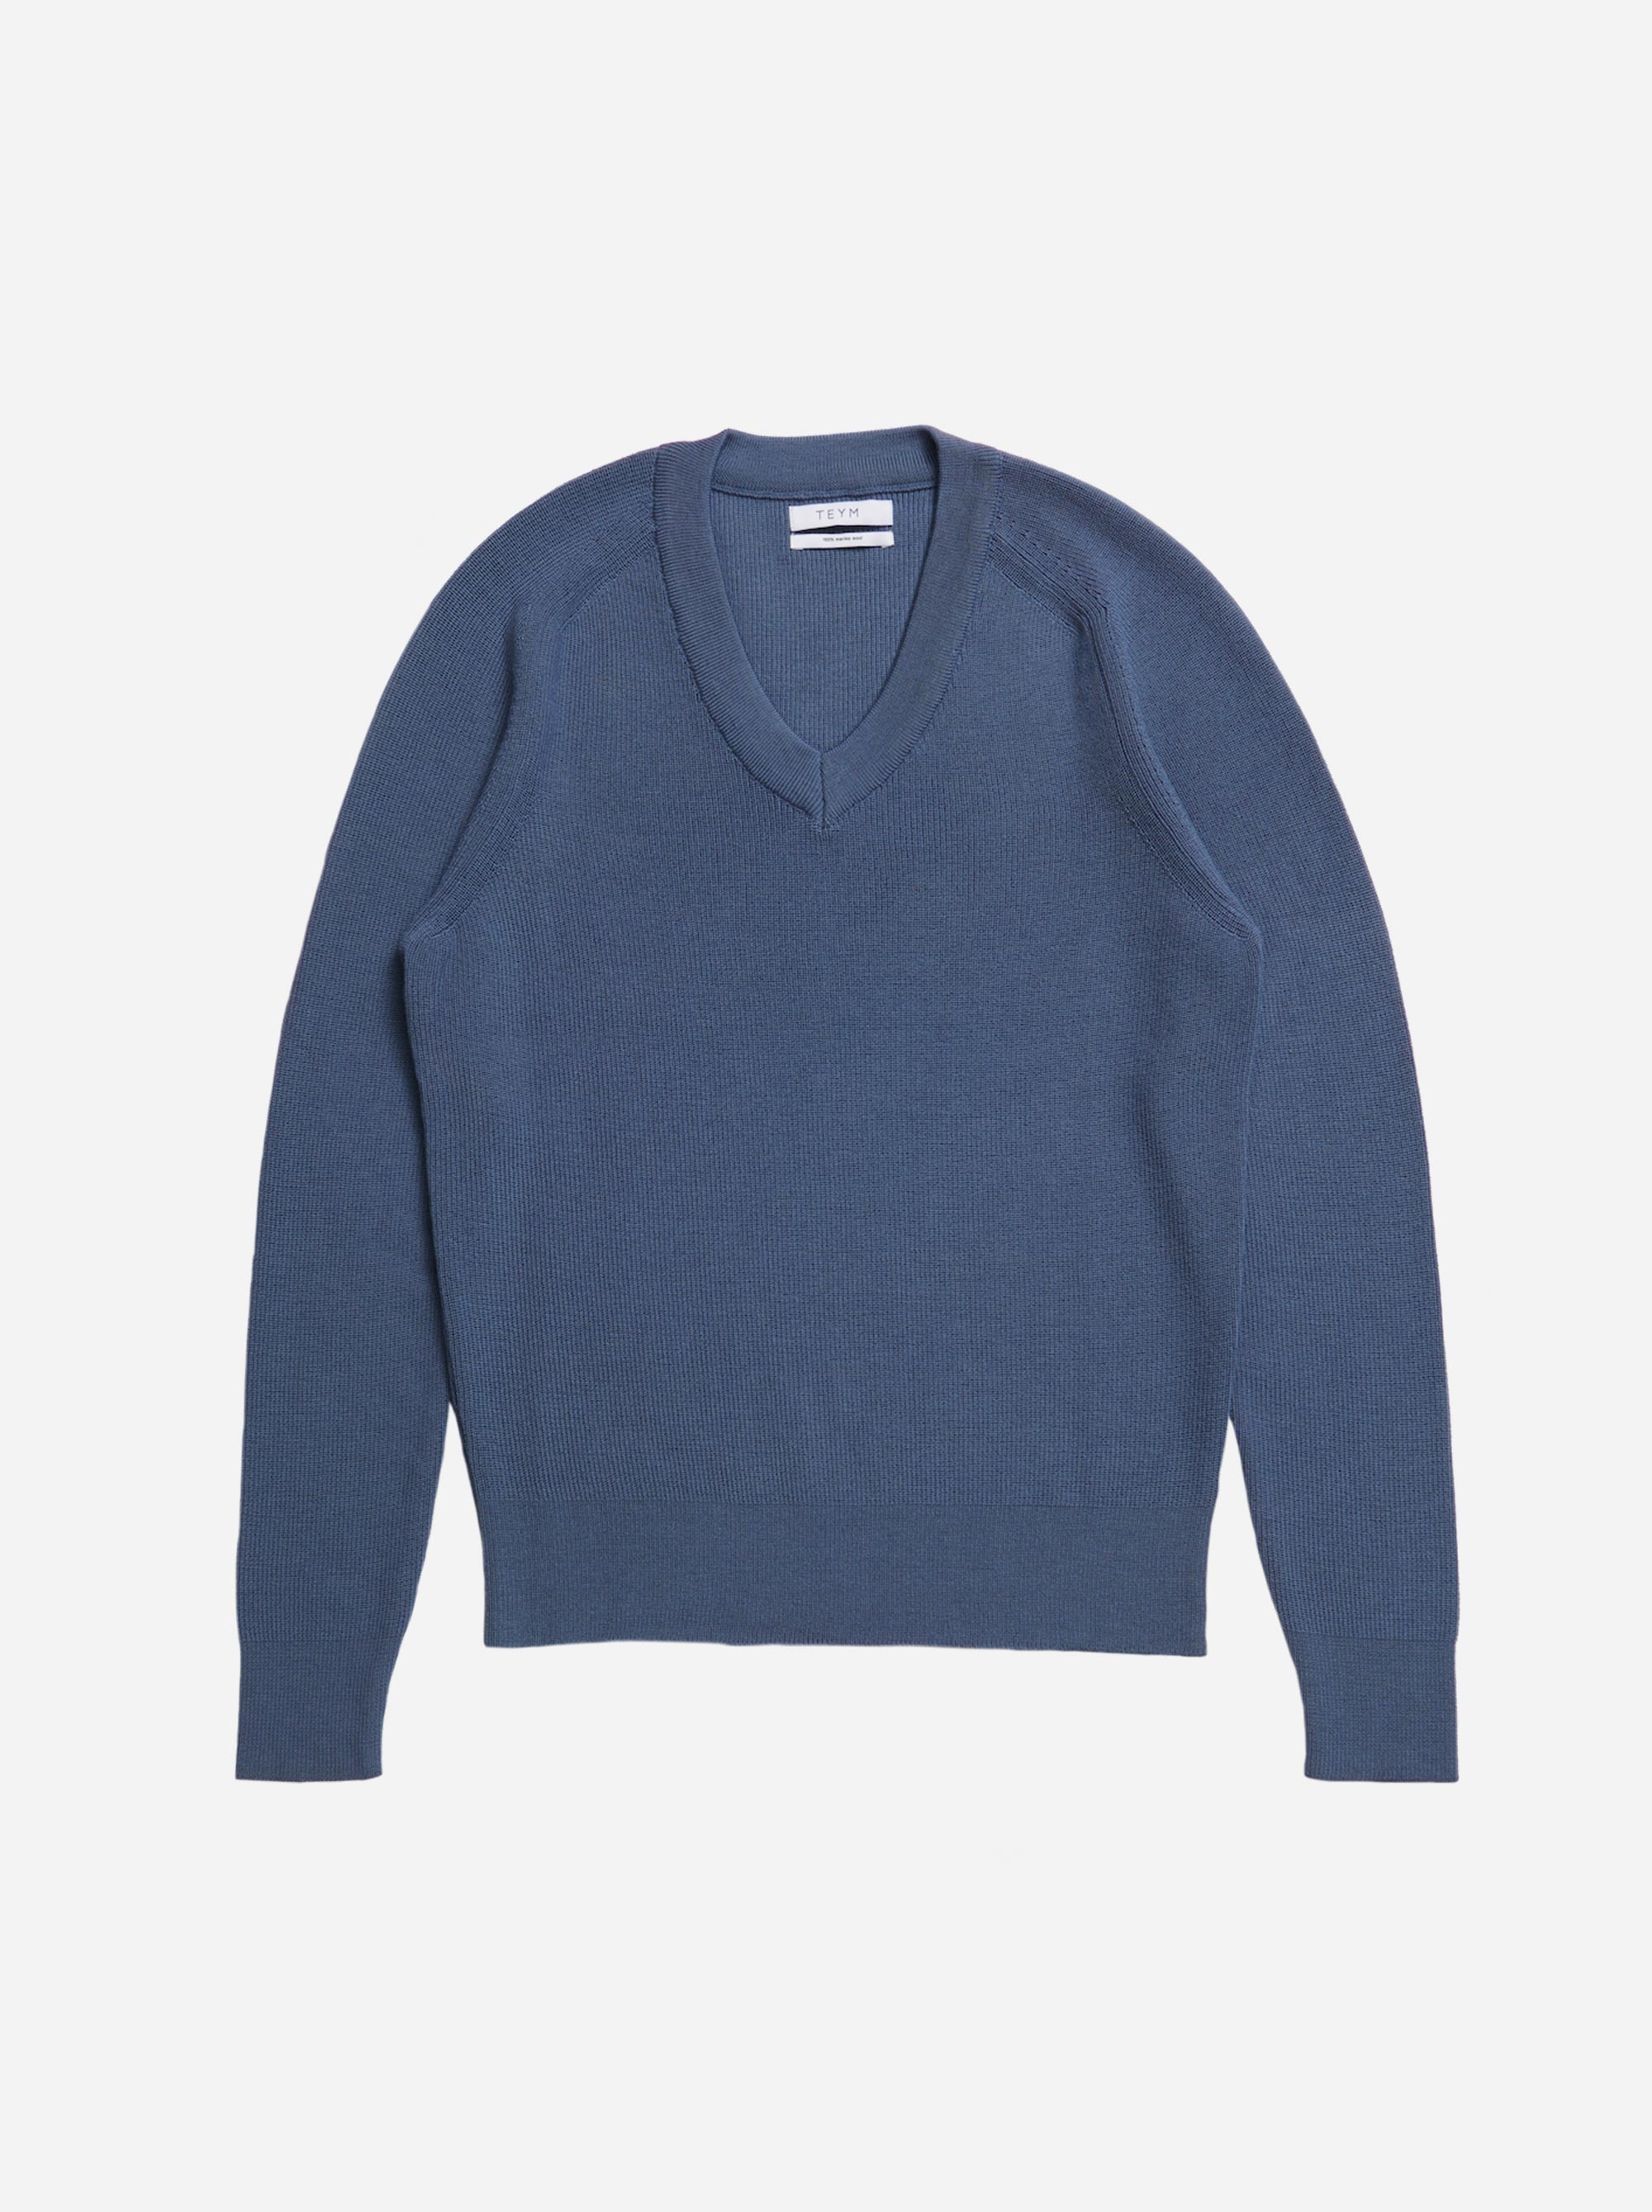 Teym - V-Neck - The Merino Sweater - Women - Sky blue - 4